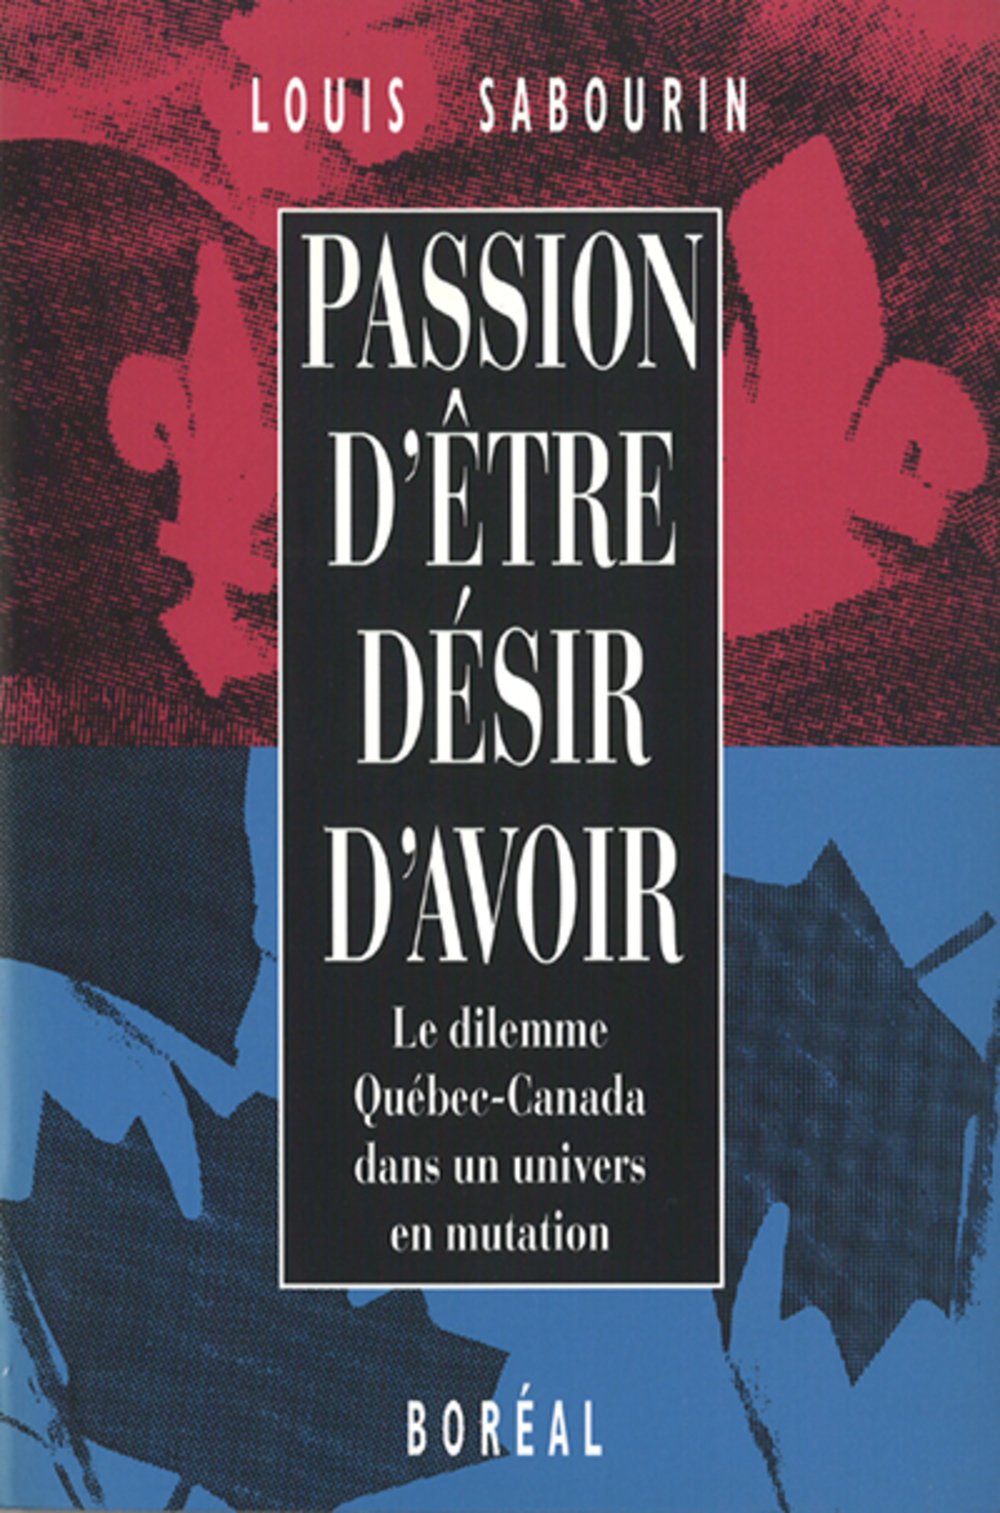 Livre ISBN 2890524809 Passion d'être, désir d'avoir : Le dilemme Québec-Canada dans un univers en mutation (Louis Sabourin)